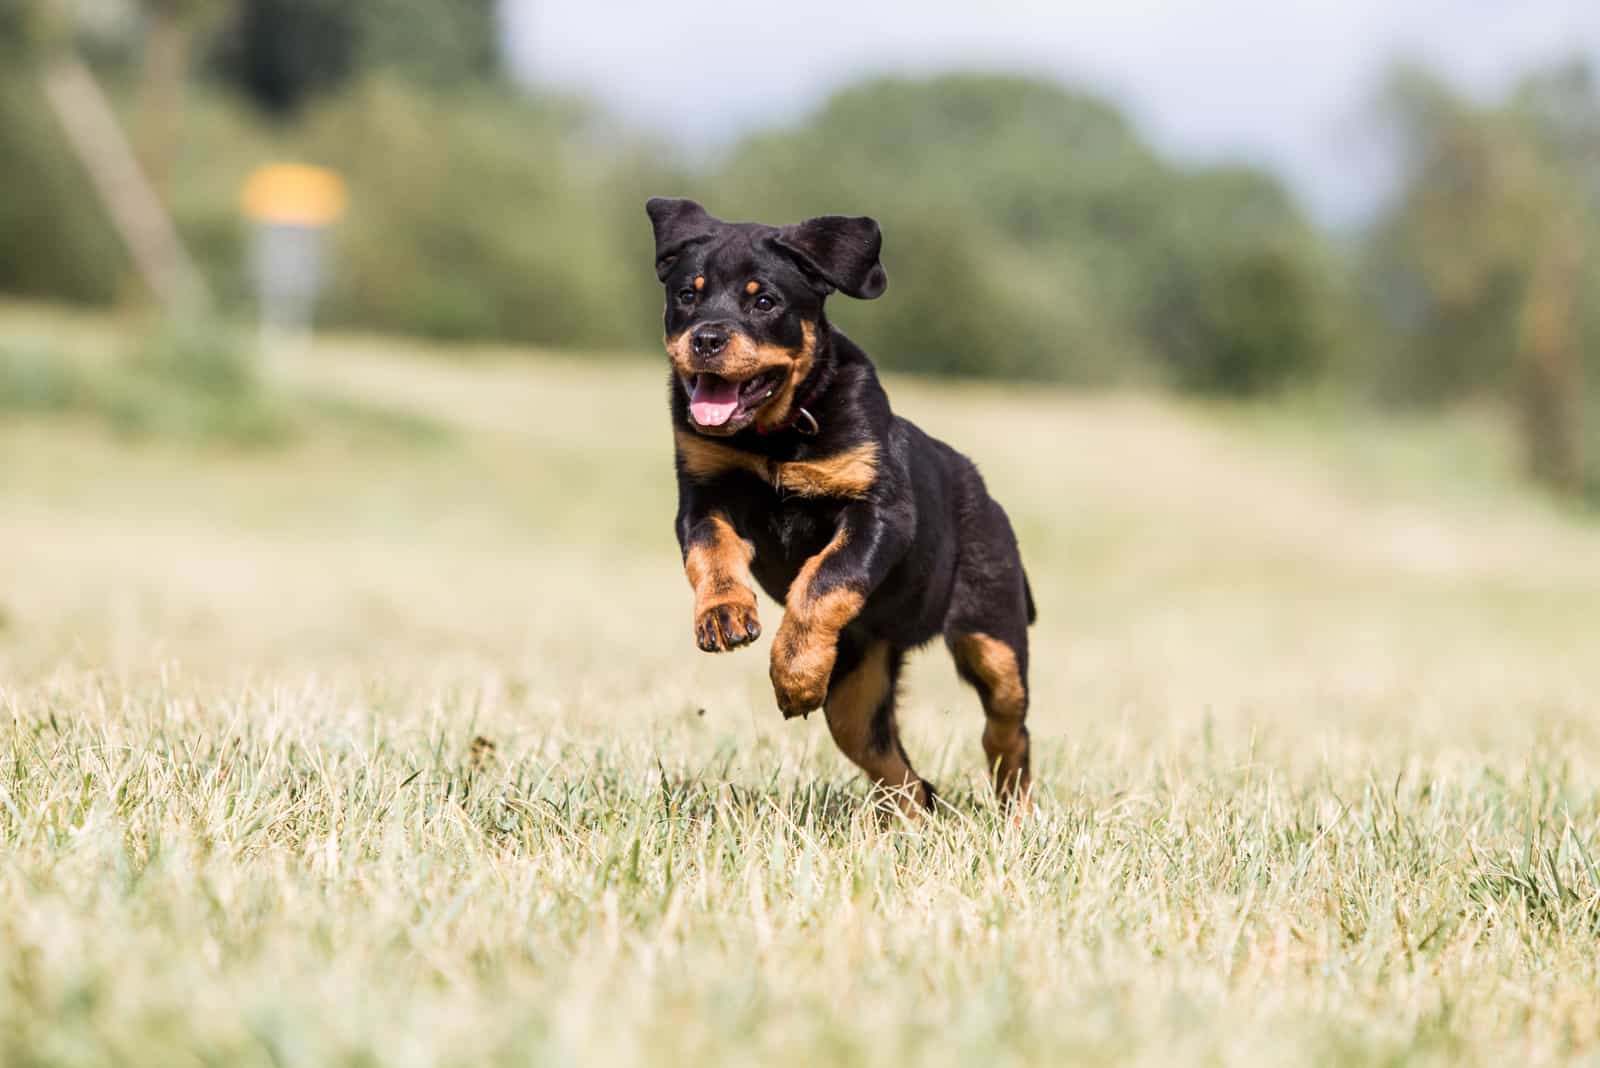 A Rottweiler puppy runs across the field